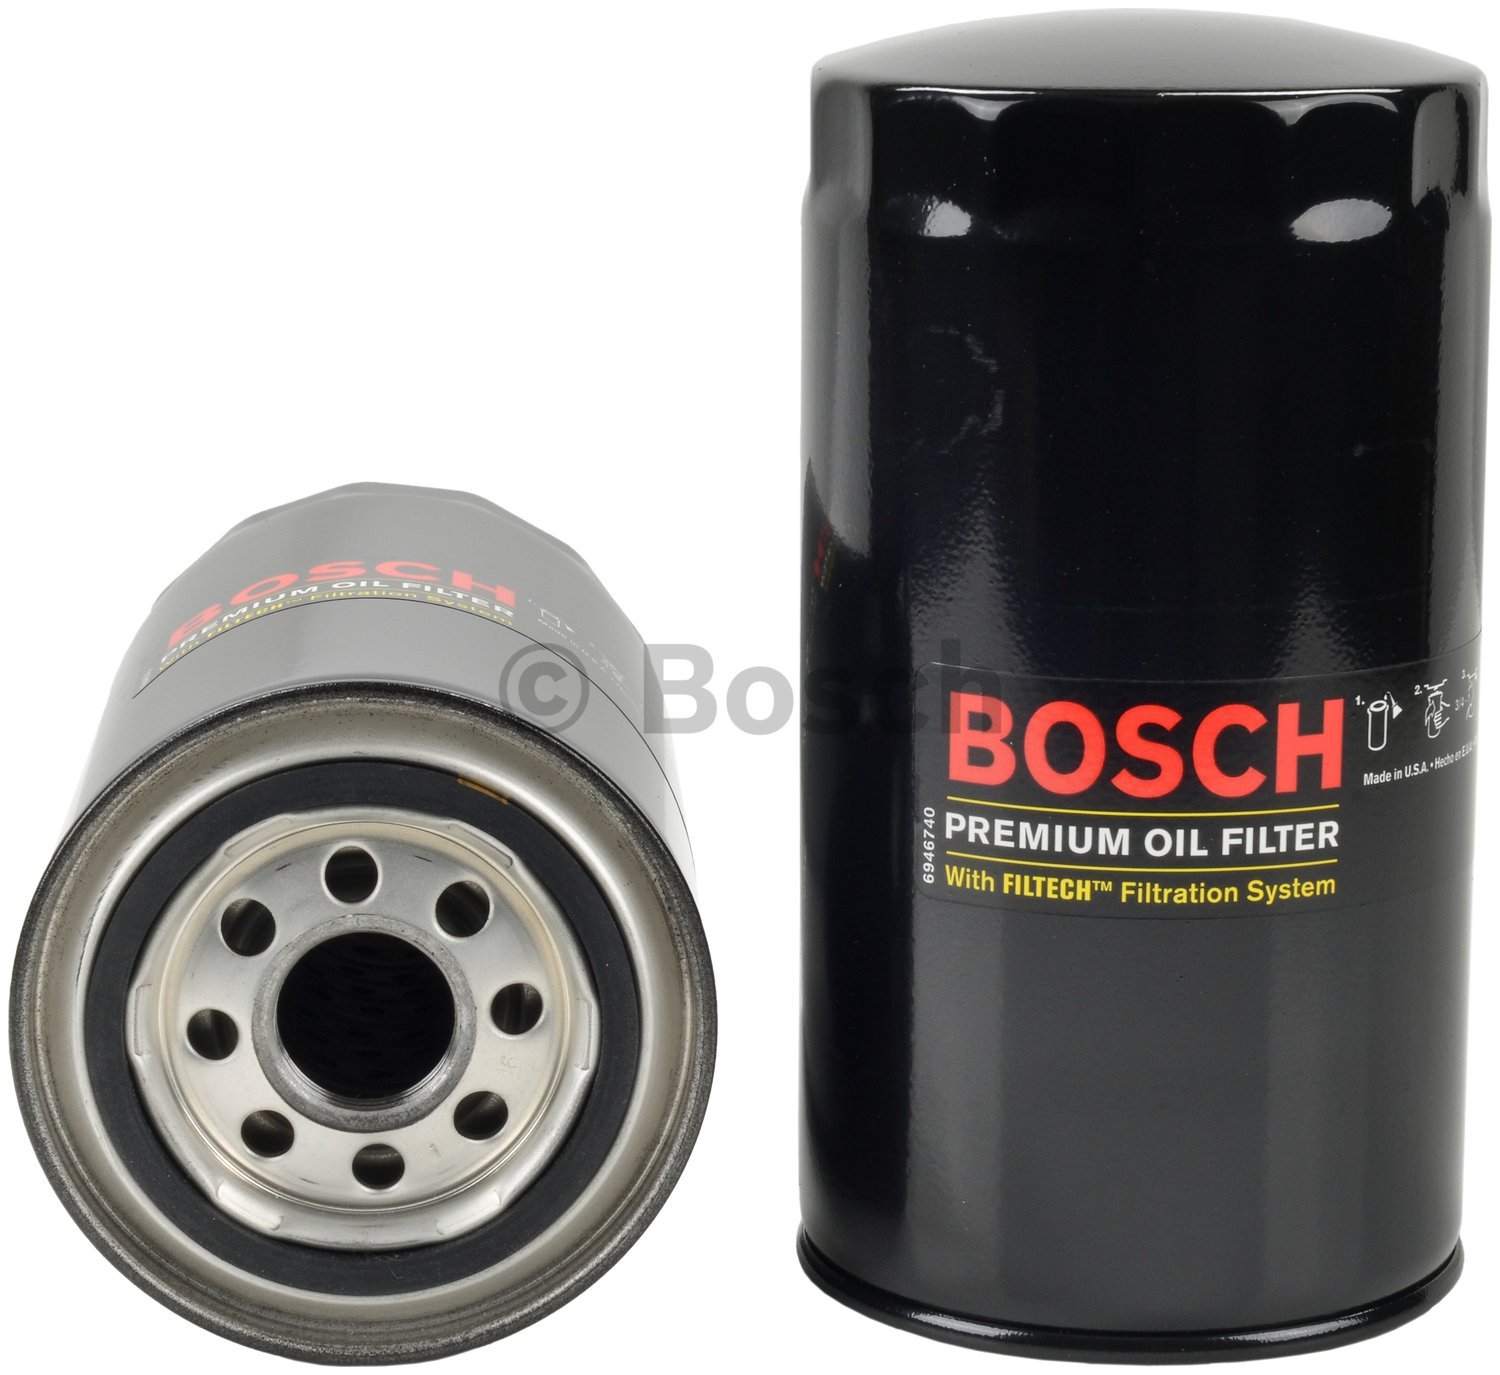 Bosch 3520 Premium-Ölfilter mit Filtertech-Filtrationstechnologie, kompatibel mit ausgewählten Dodge D250, D350, Ram 2500, Ram 3500, Ram 4500, Ram 5500, W250, W350; Ram 2500, 3500, 4500, 5500 von Bosch Automotive